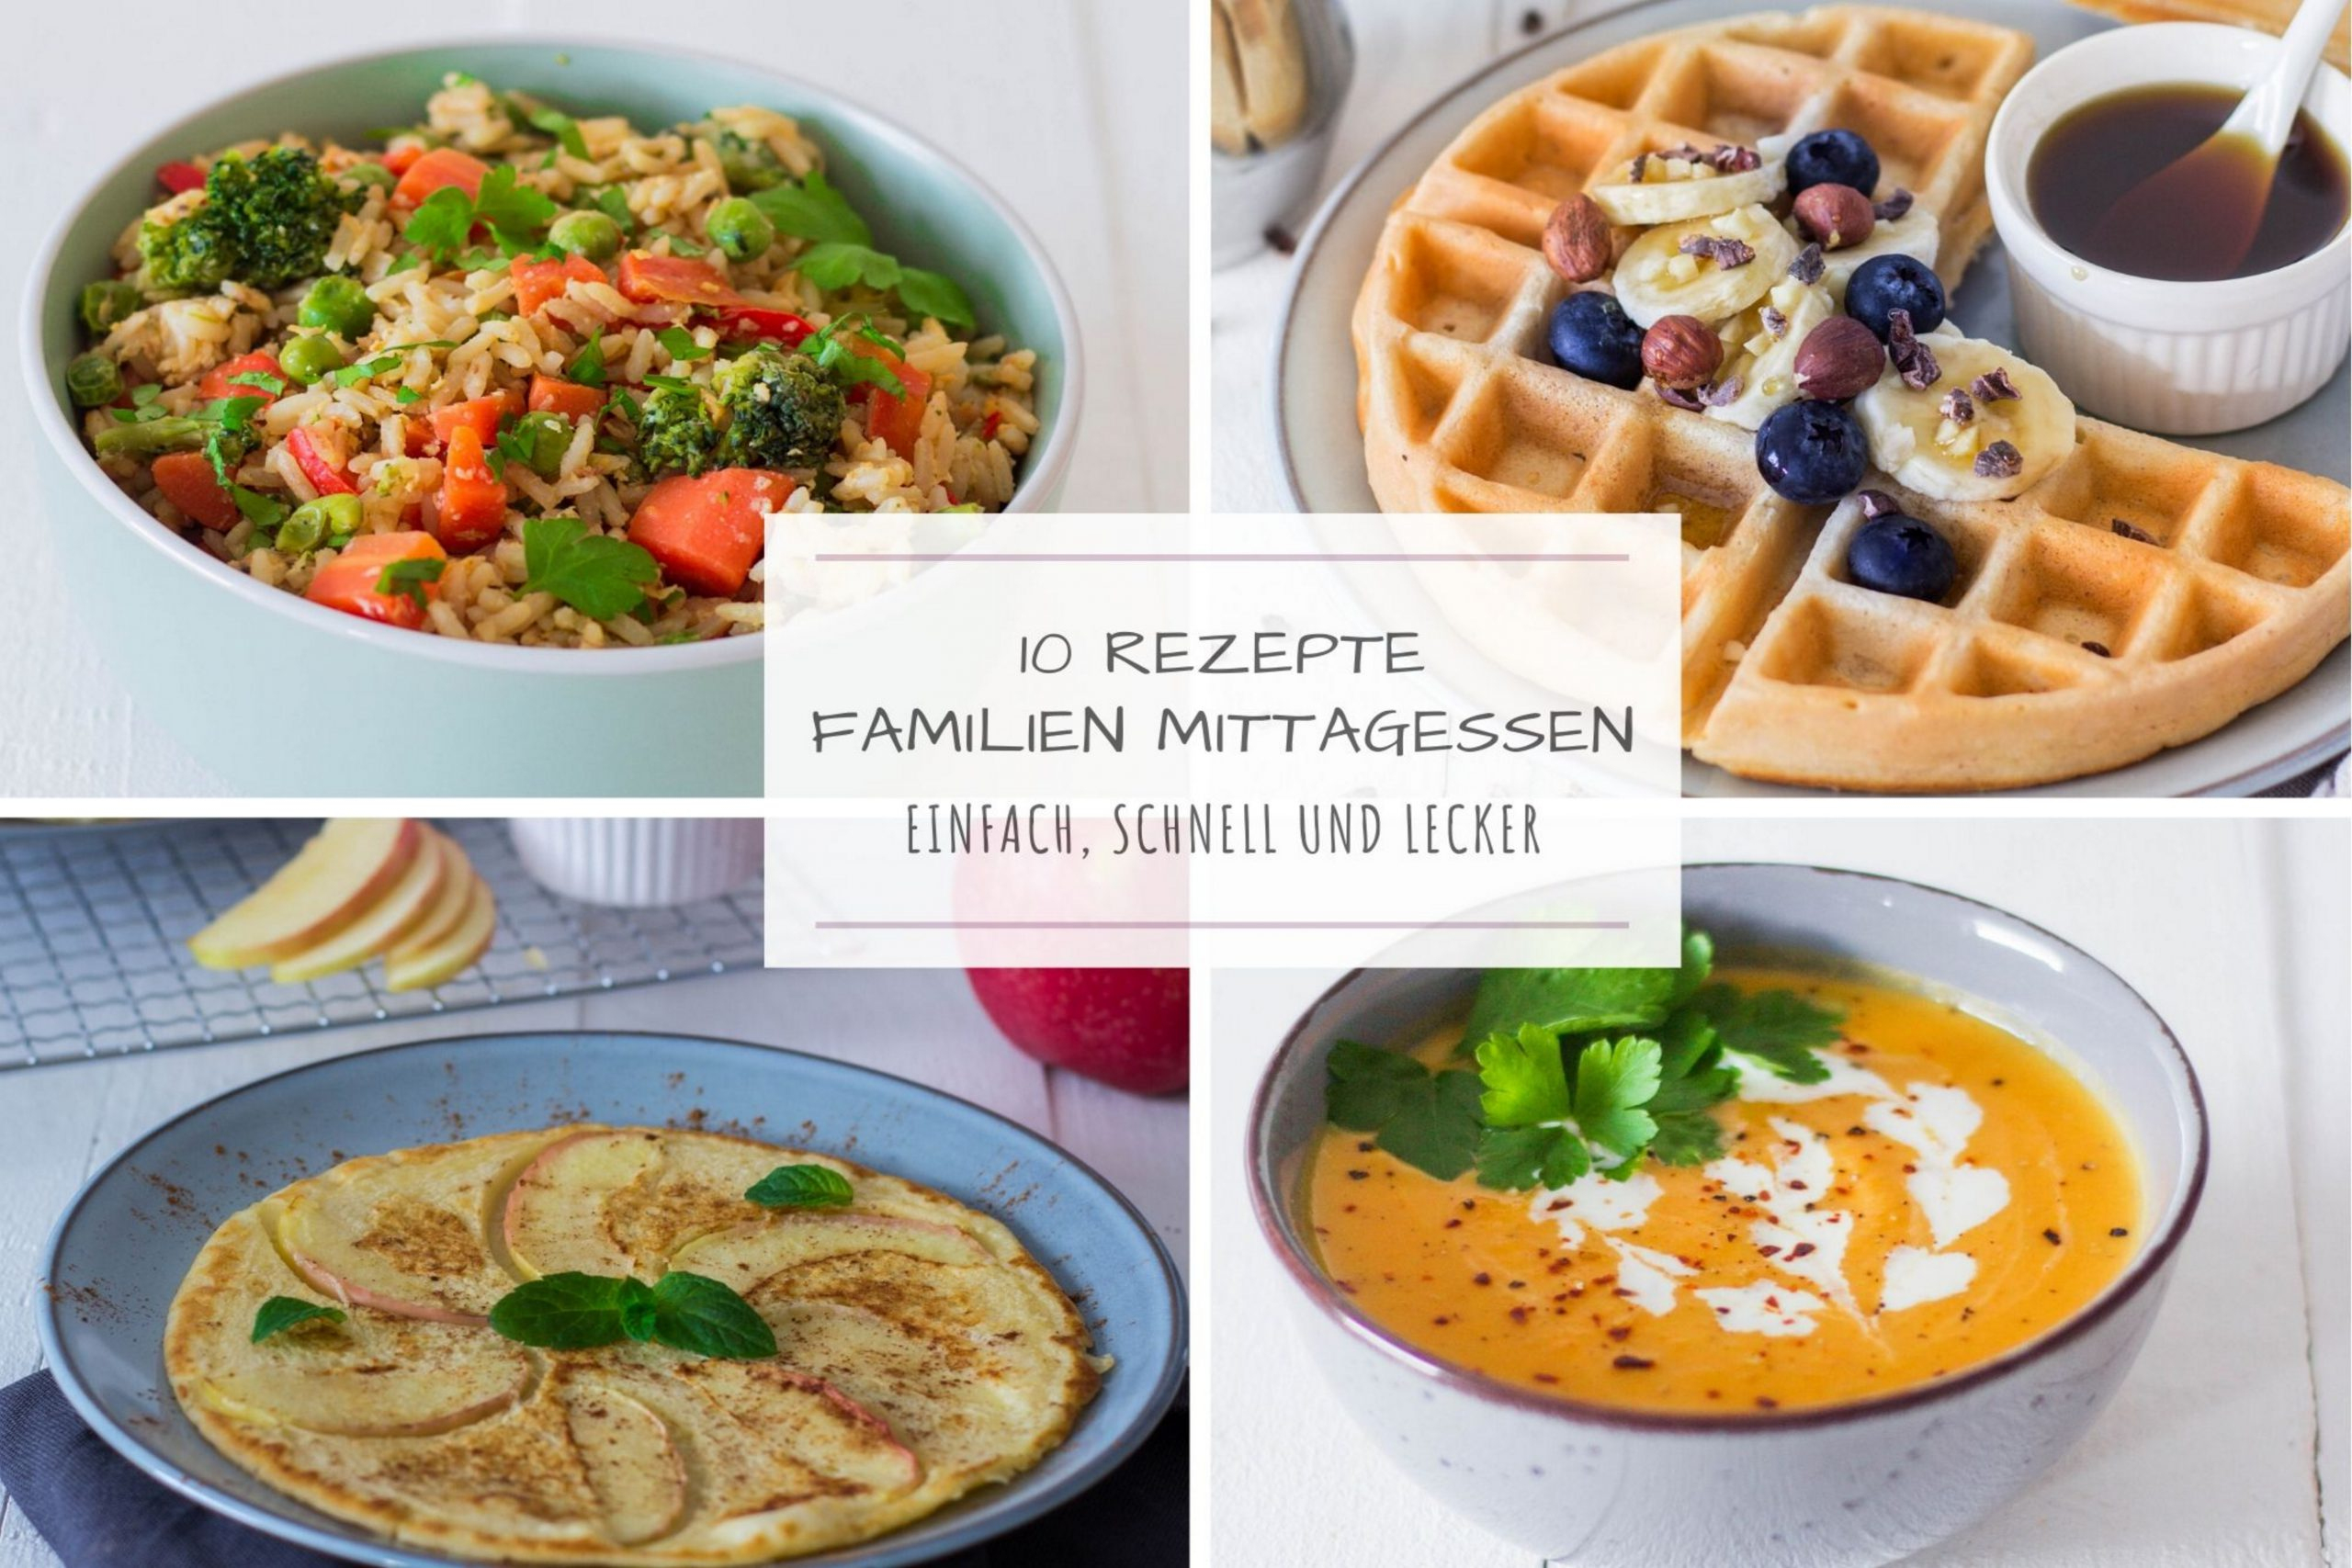 10 Ideen Fürs Familien-Mittagessen ⋆ Lieblingszwei * Mama innen Schnelle Leckere Rezepte Mittagessen